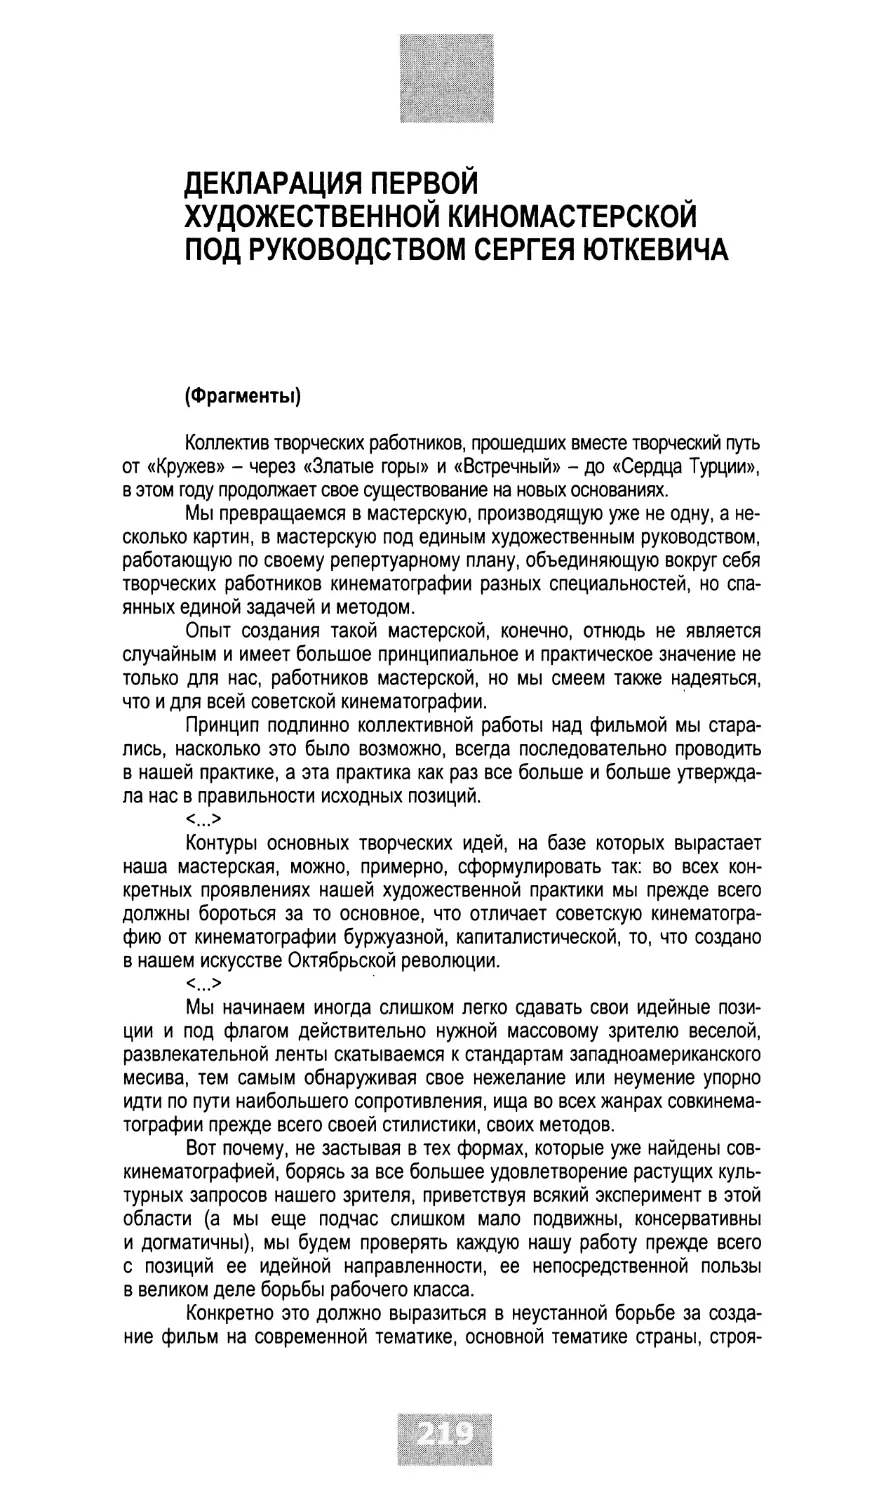 Декларация Первой художественной киномастерской под руководством Сергея Юткевича